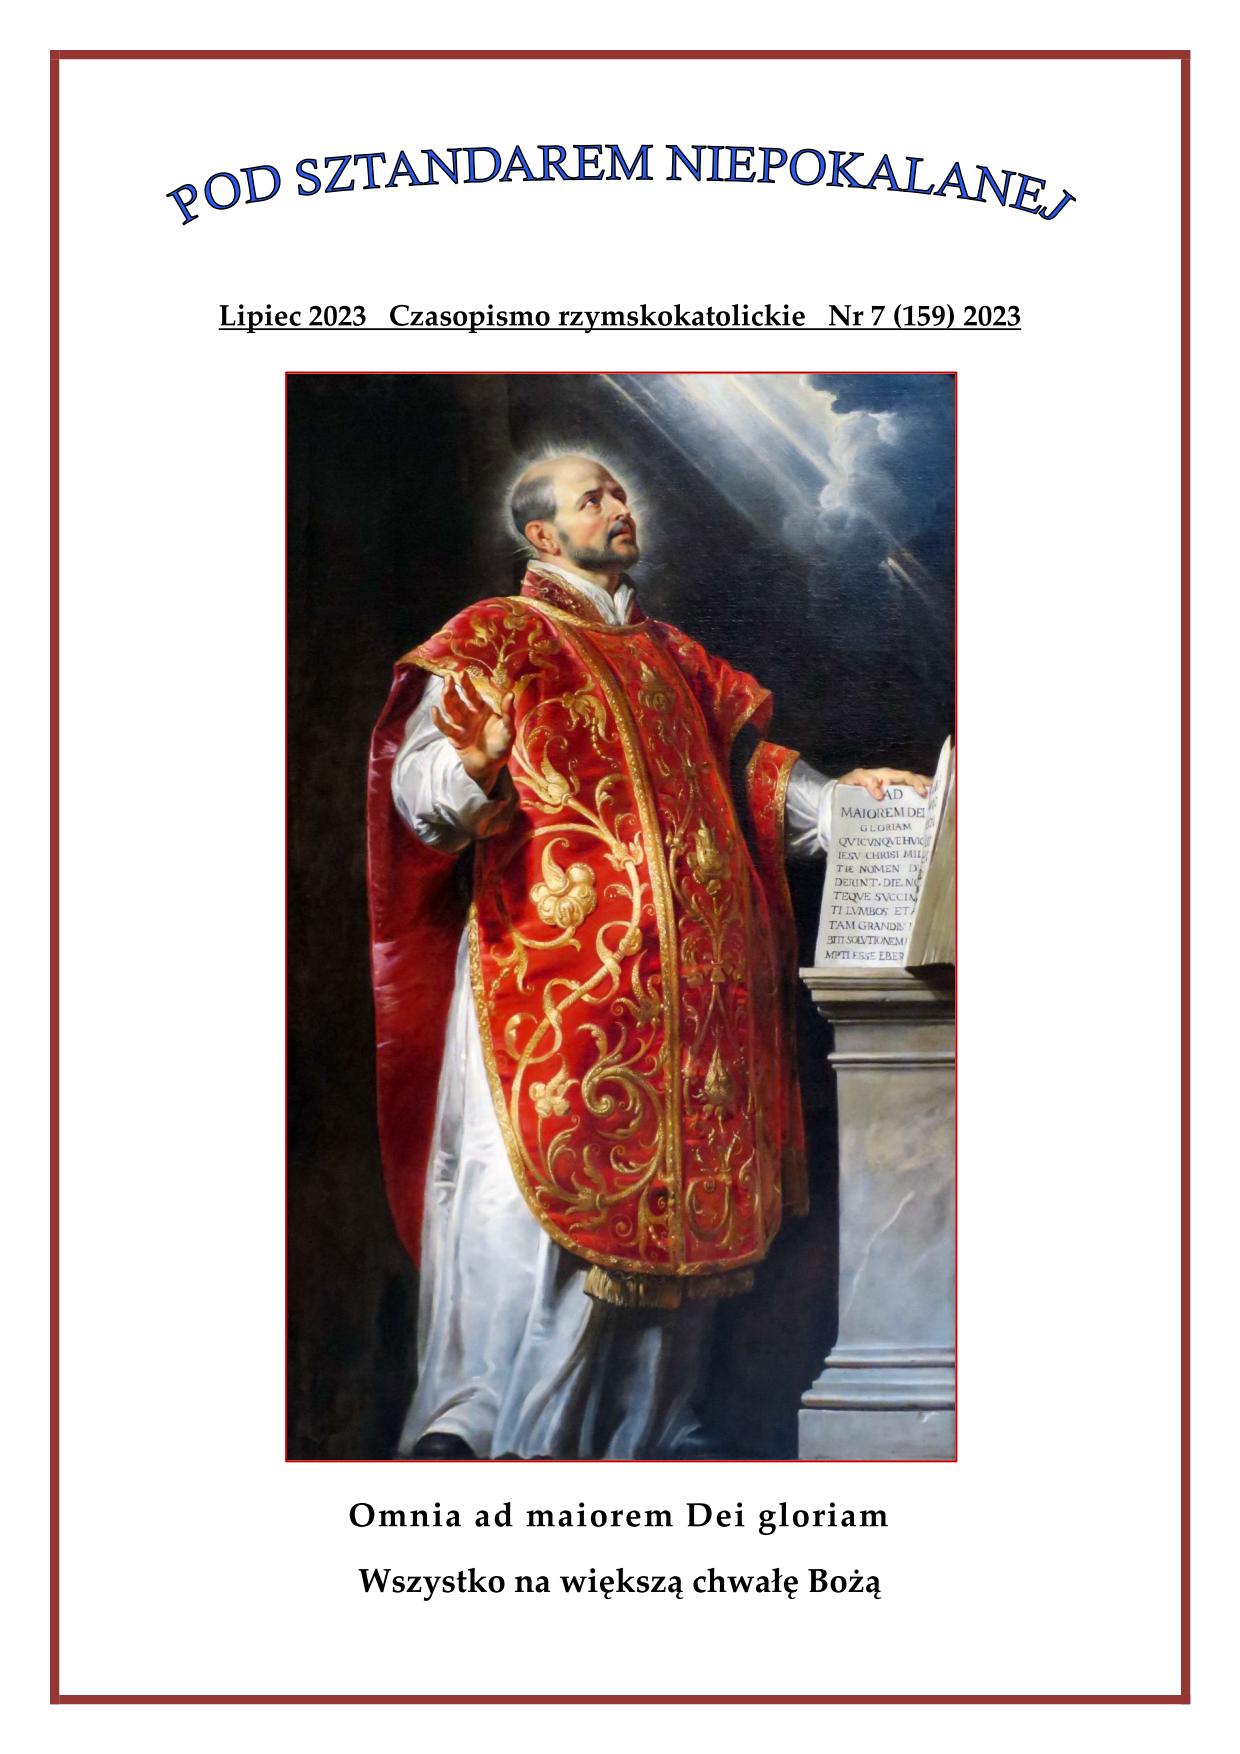 "Pod sztandarem Niepokalanej". Nr 159. Lipiec 2023. Czasopismo rzymskokatolickie.